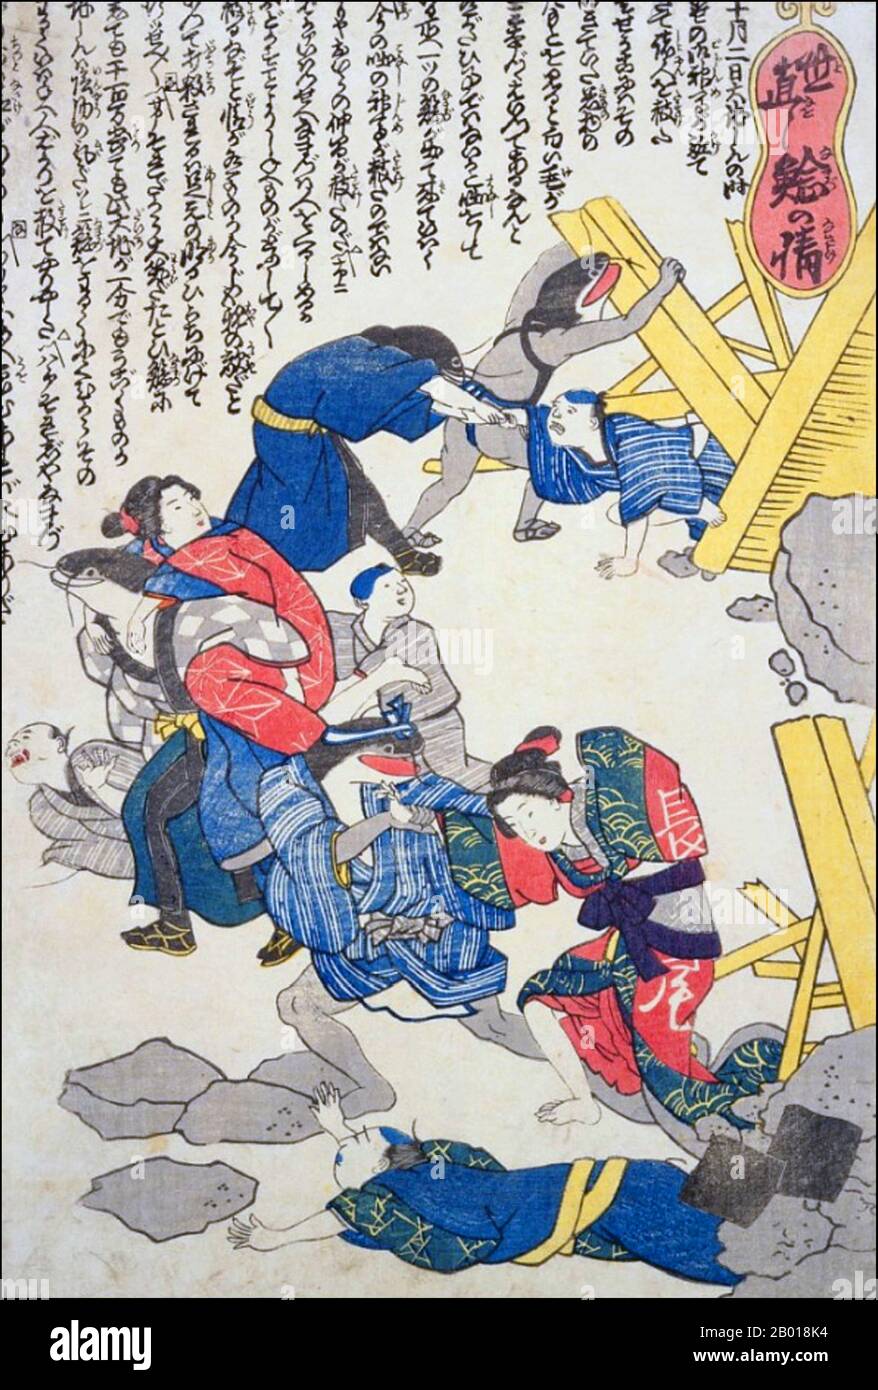 Japan: Talisman gegen Erdbeben und Tsunami. Apologetische Namazu-Welse, die das Erdbeben in Ansei und den Tsunami verursacht haben, retten Überlebende und helfen beim Wiederaufbau. Namazu-e Holzschnitt, 1855. Das Ansei-Edo-Erdbeben von 1855, auch bekannt als das große Ansei-Erdbeben, war eine der größten Katastrophen der späten Edo-Zeit. Das Erdbeben ereignete sich um 22:00 Uhr Ortszeit am 11. November. Es hatte ein Epizentrum in der Nähe von Edo (heute Tokio), was in der Region Kantō durch die Erschütterungen und die anschließenden Brände erhebliche Schäden verursachte, mit einer Todesrate von etwa 7.000 Menschen. Das Erdbeben löste auch einen Tsunami aus. Stockfoto